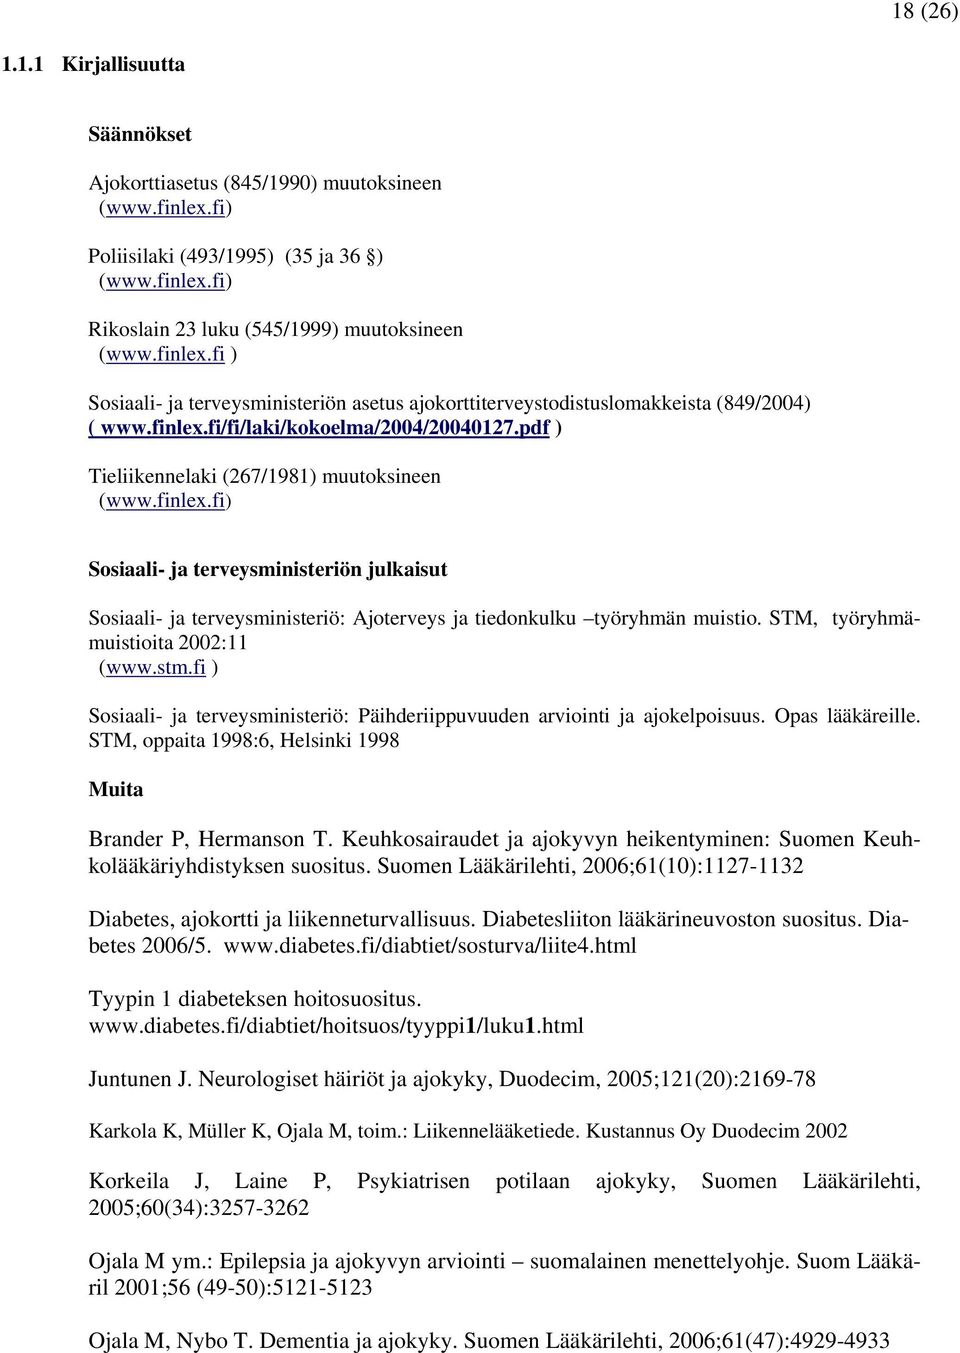 finlex.fi) Sosiaali- ja terveysministeriön julkaisut Sosiaali- ja terveysministeriö: Ajoterveys ja tiedonkulku työryhmän muistio. STM, työryhmämuistioita 2002:11 (www.stm.